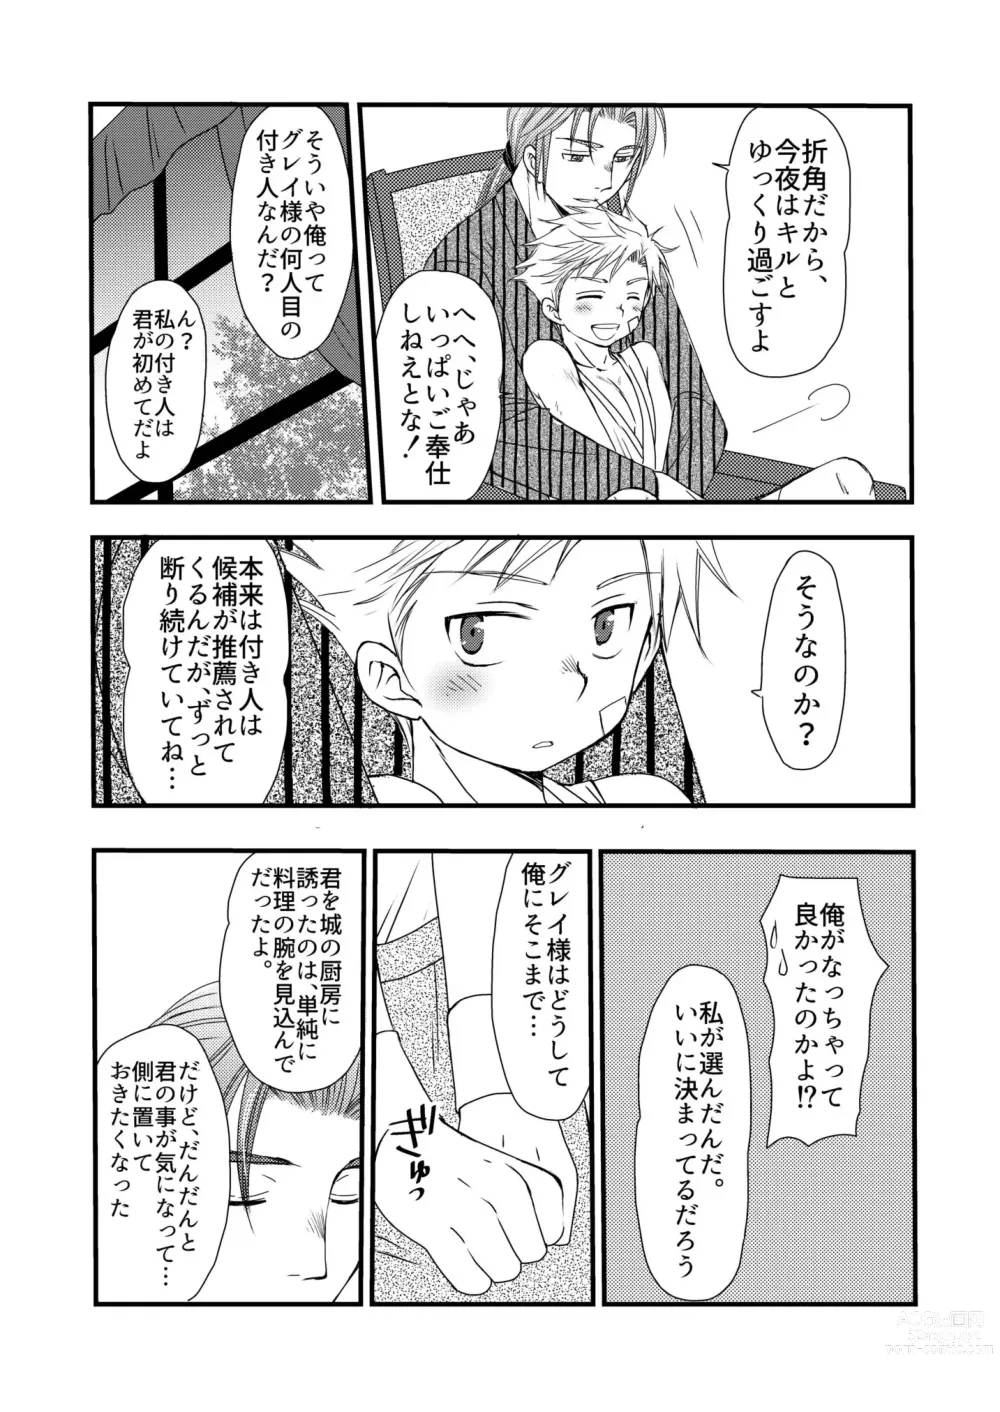 Page 51 of doujinshi Ikoku no Ryourinin